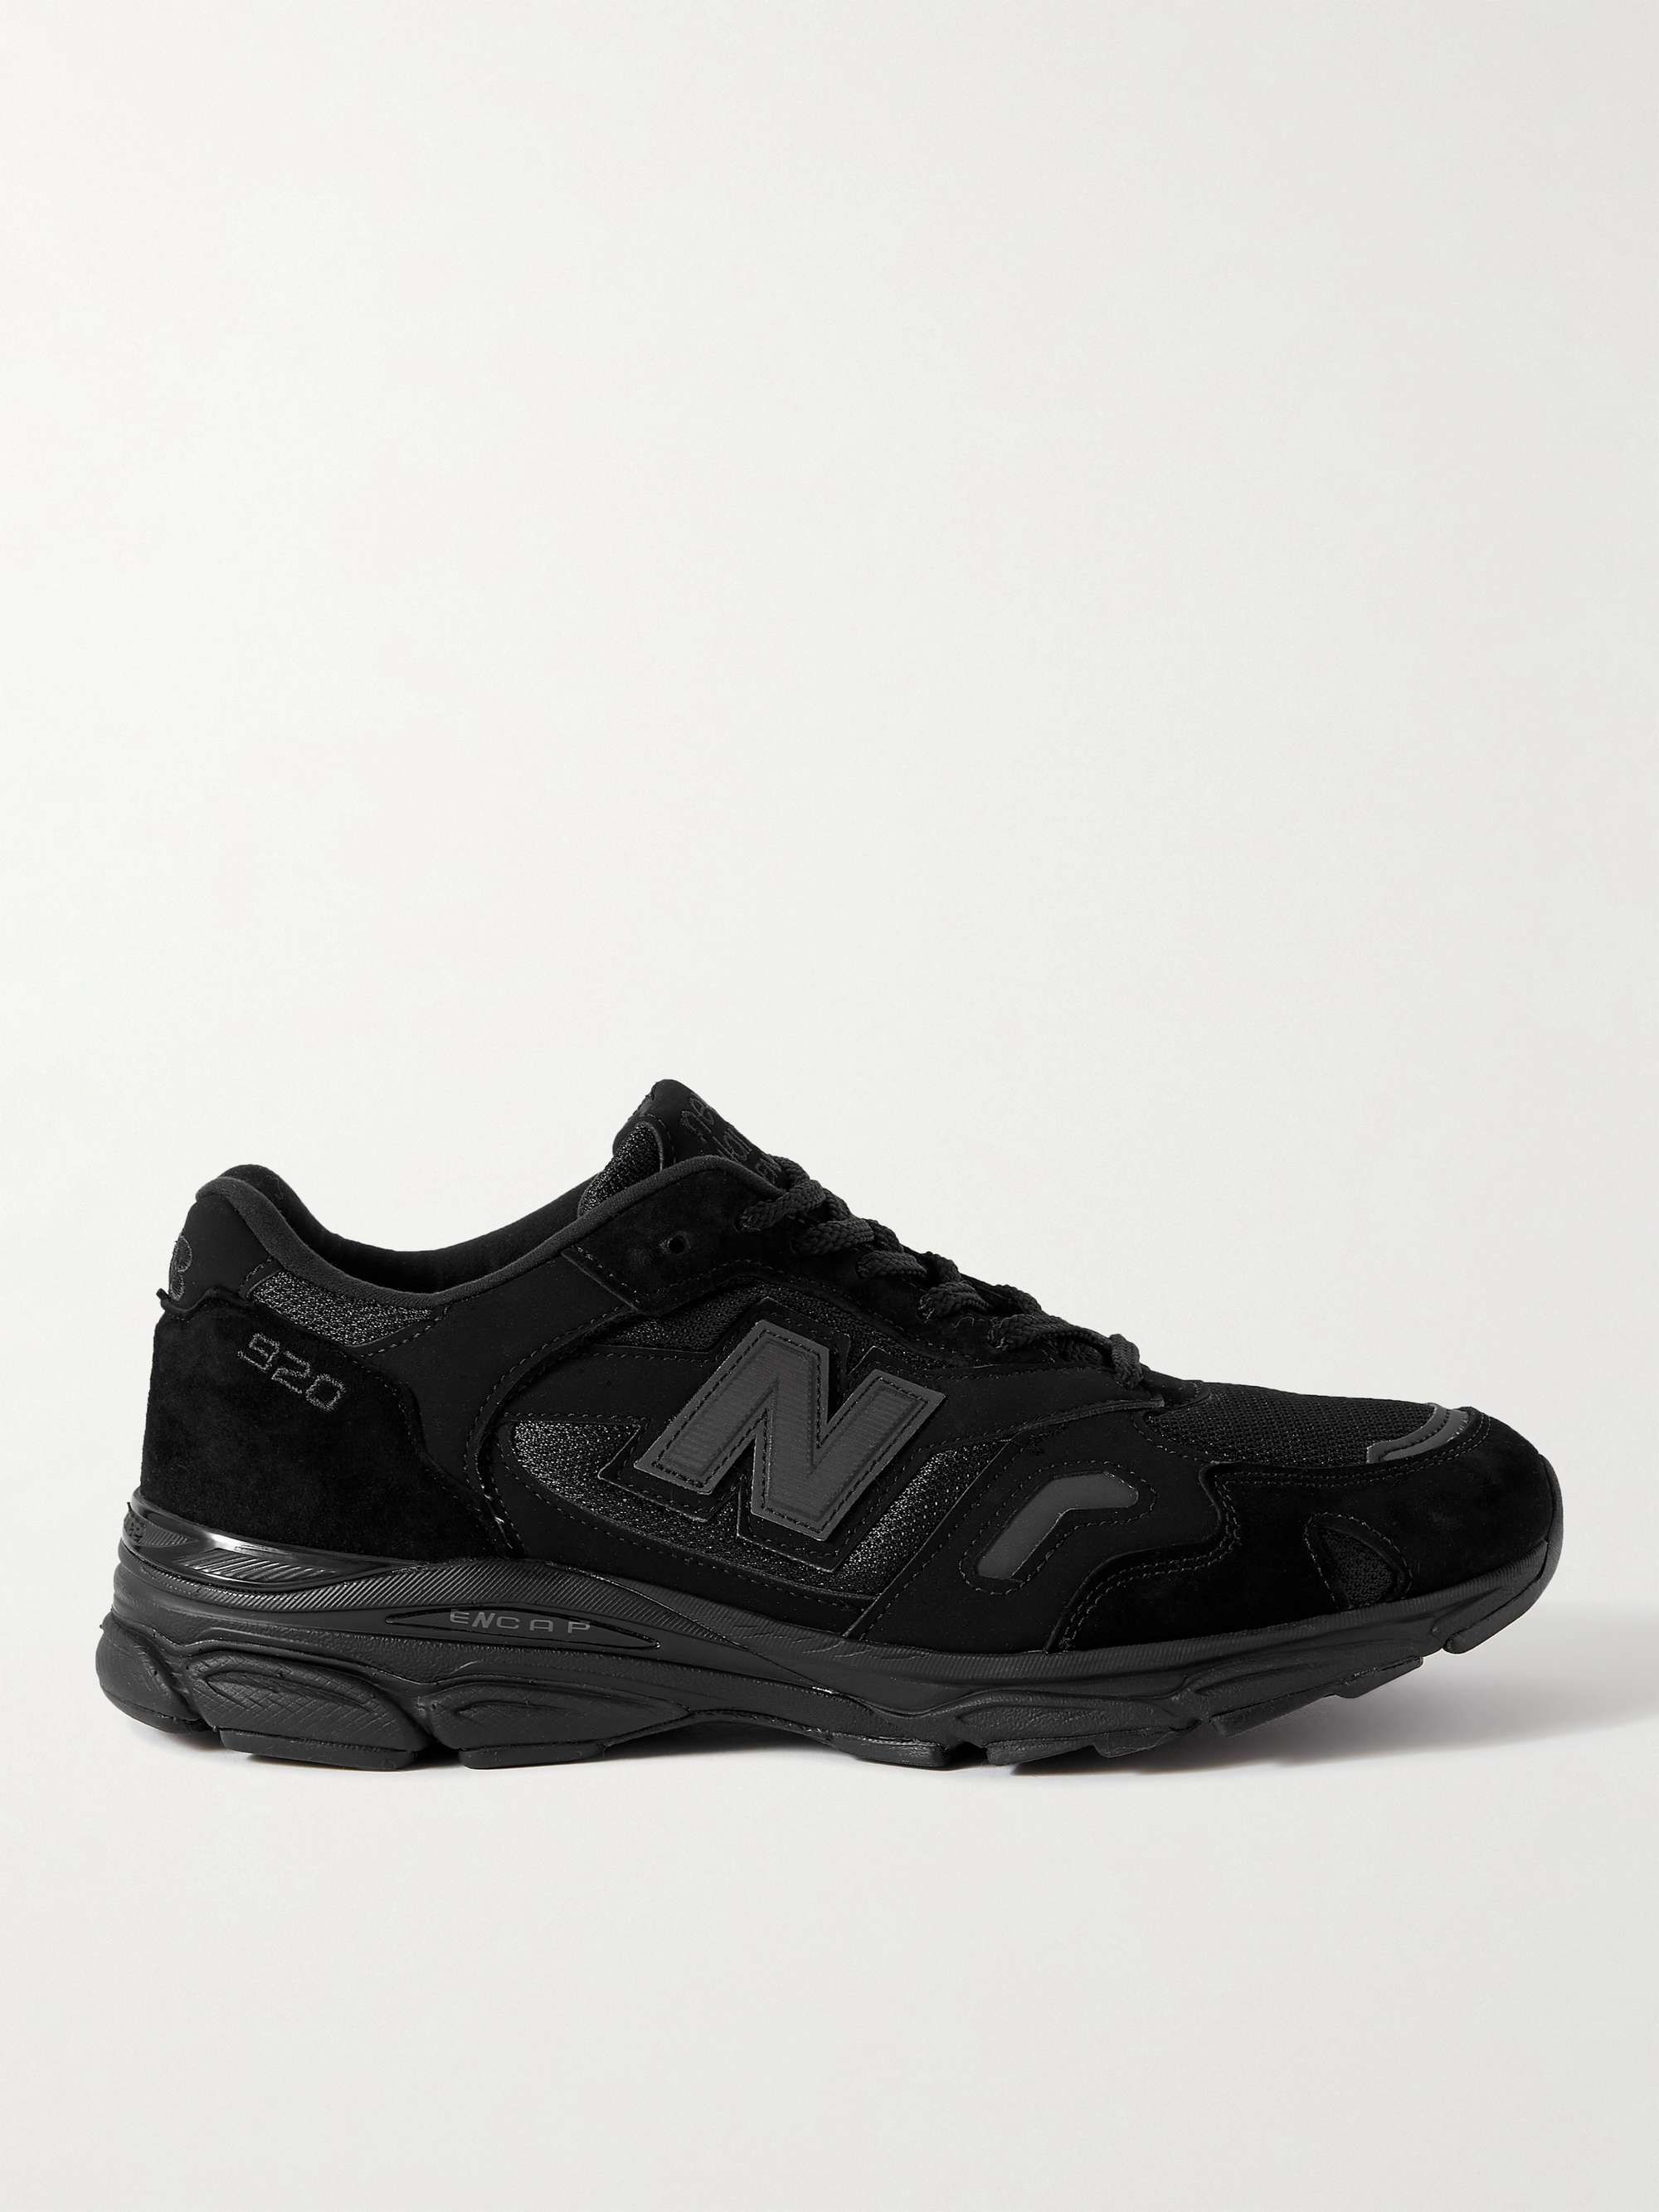 뉴발란스 M920 스니커즈 New Balance M920 Suede and Mesh Sneakers,Black